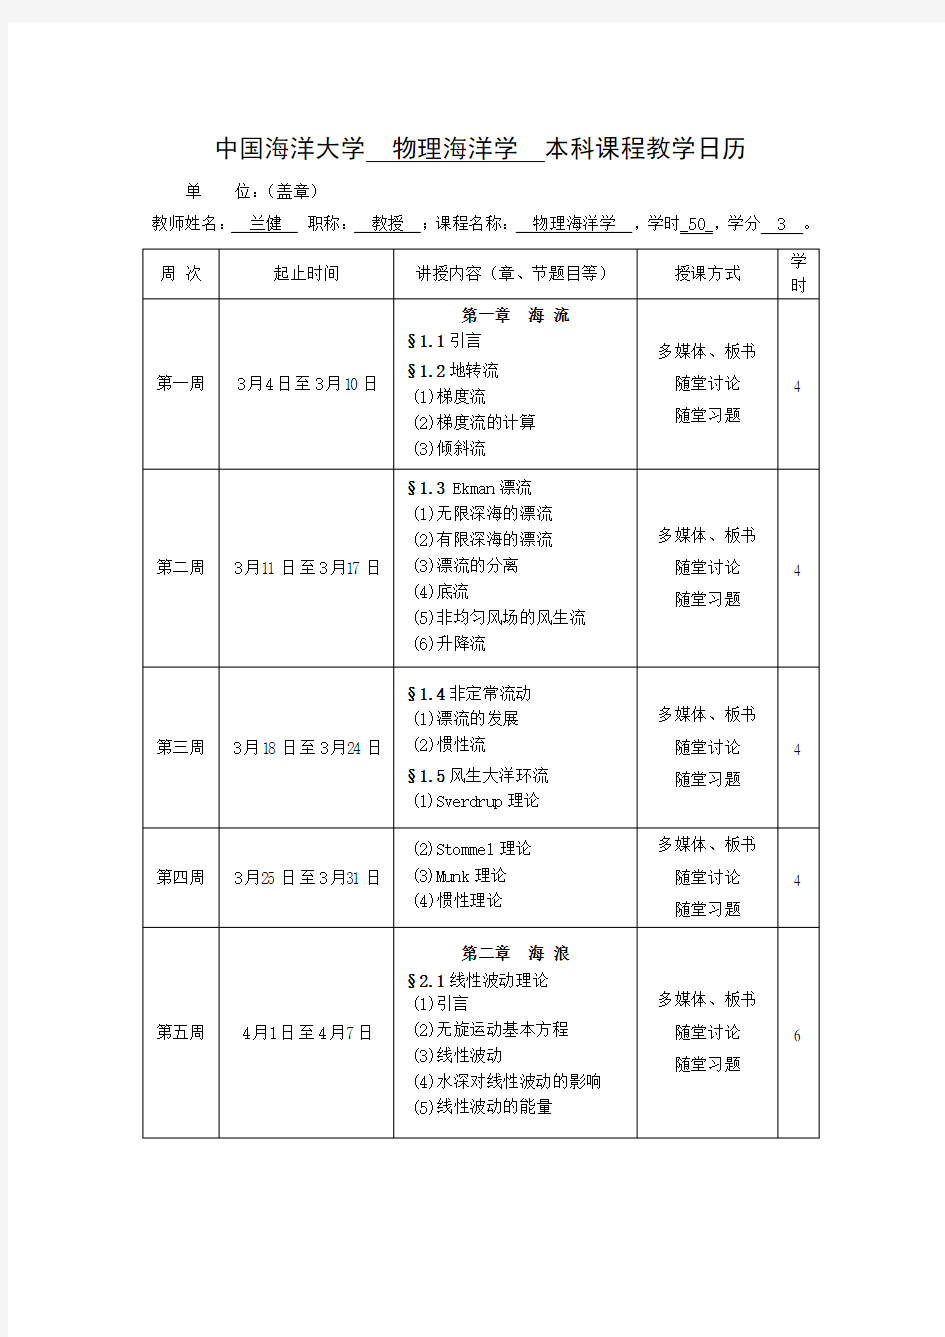 中国海洋大学 物理海洋学 本科课程教学日历